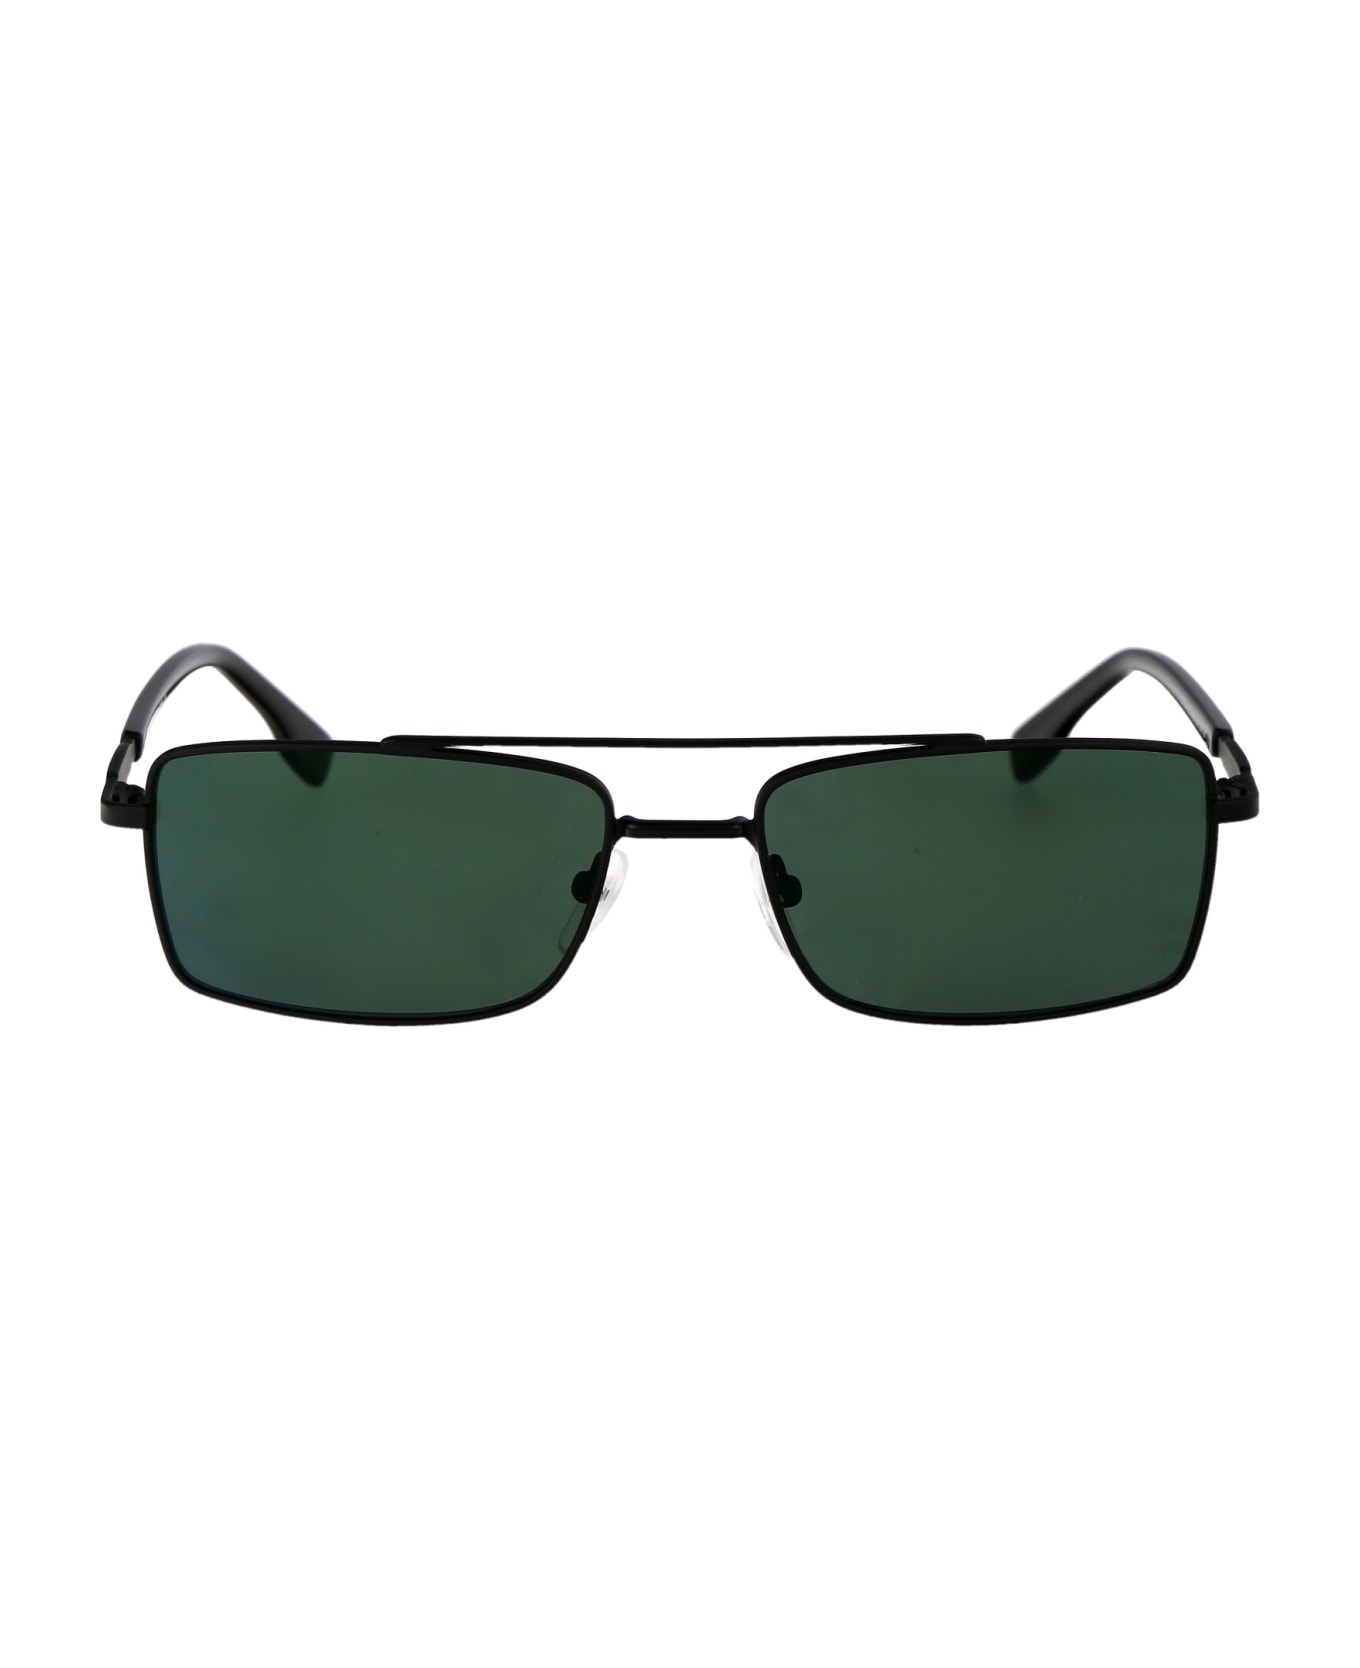 Karl Lagerfeld Kl348s Sunglasses - 002 BLACK